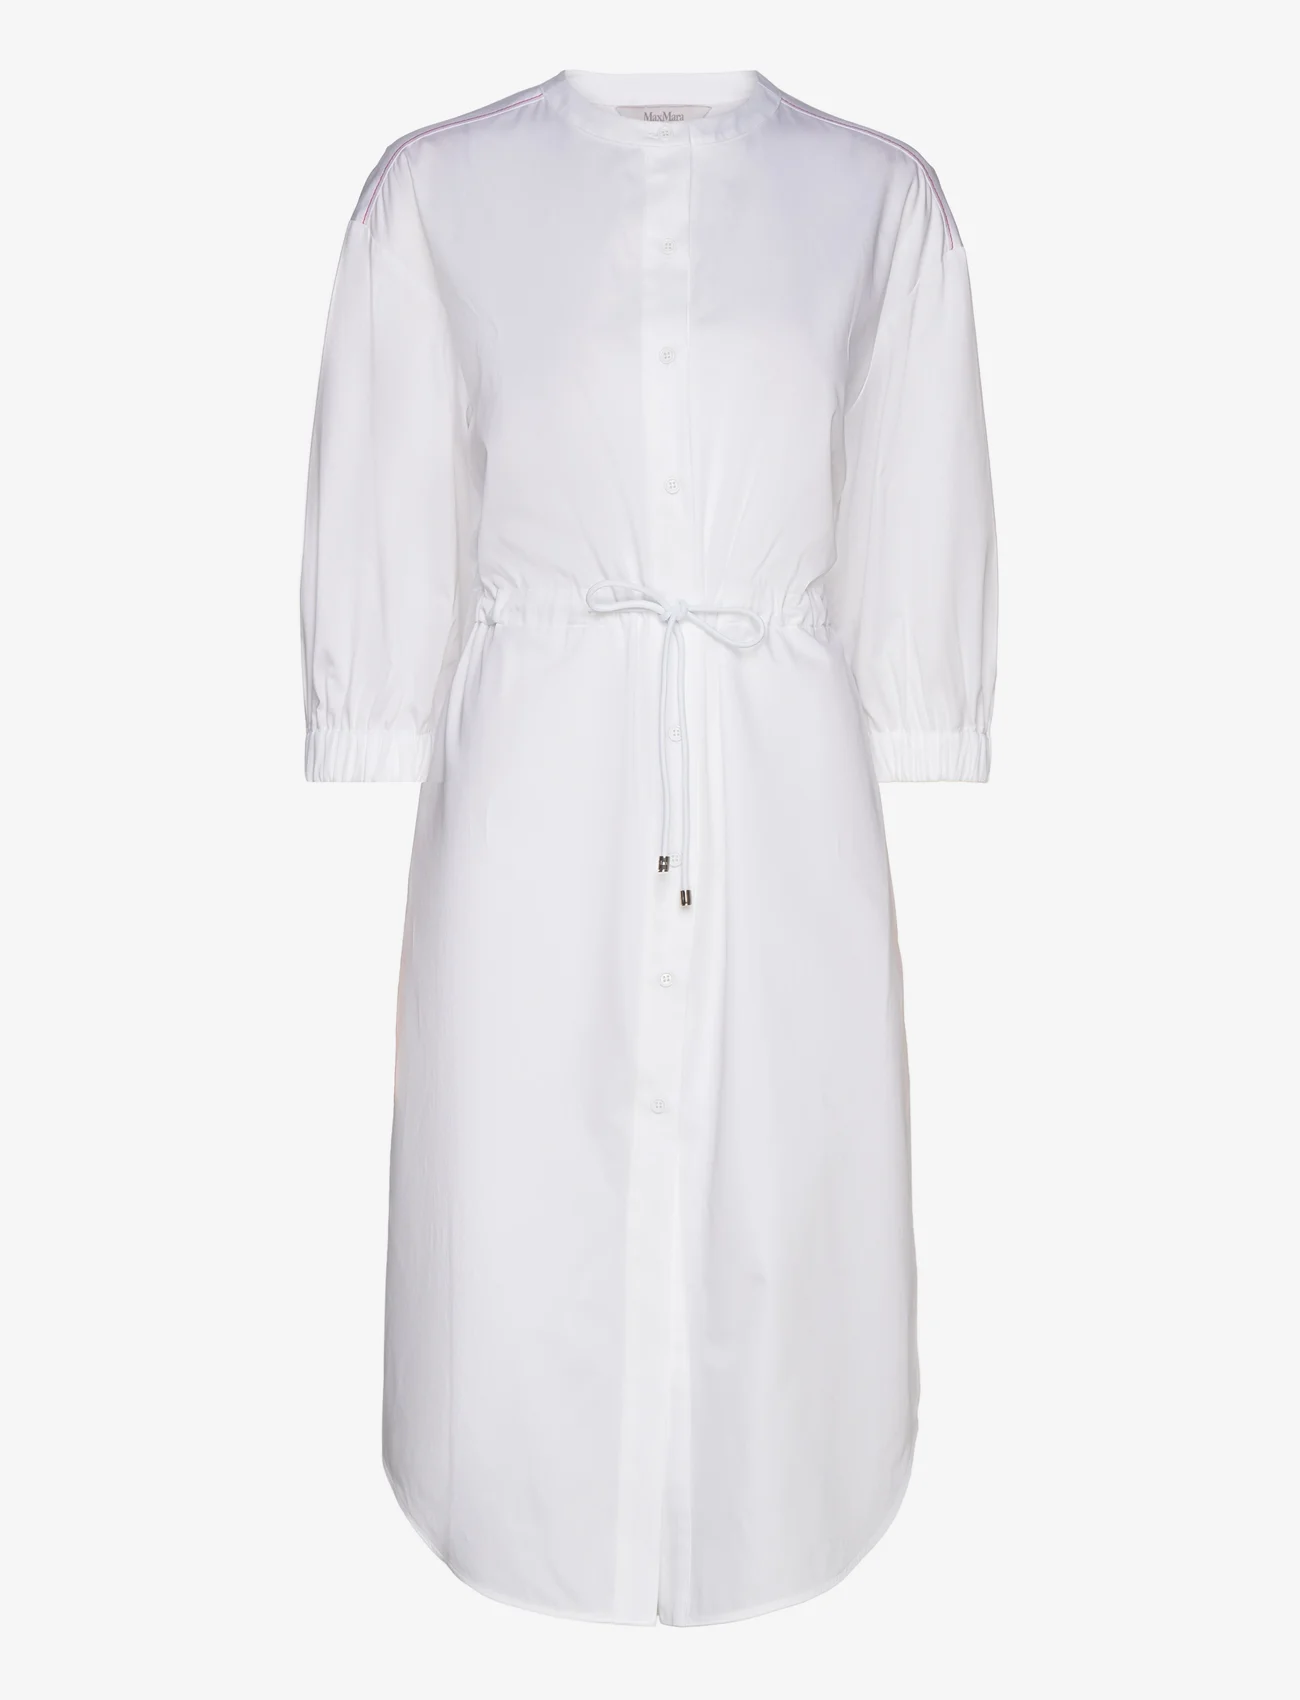 Max Mara Leisure - SHEREE - marškinių tipo suknelės - optical white - 0